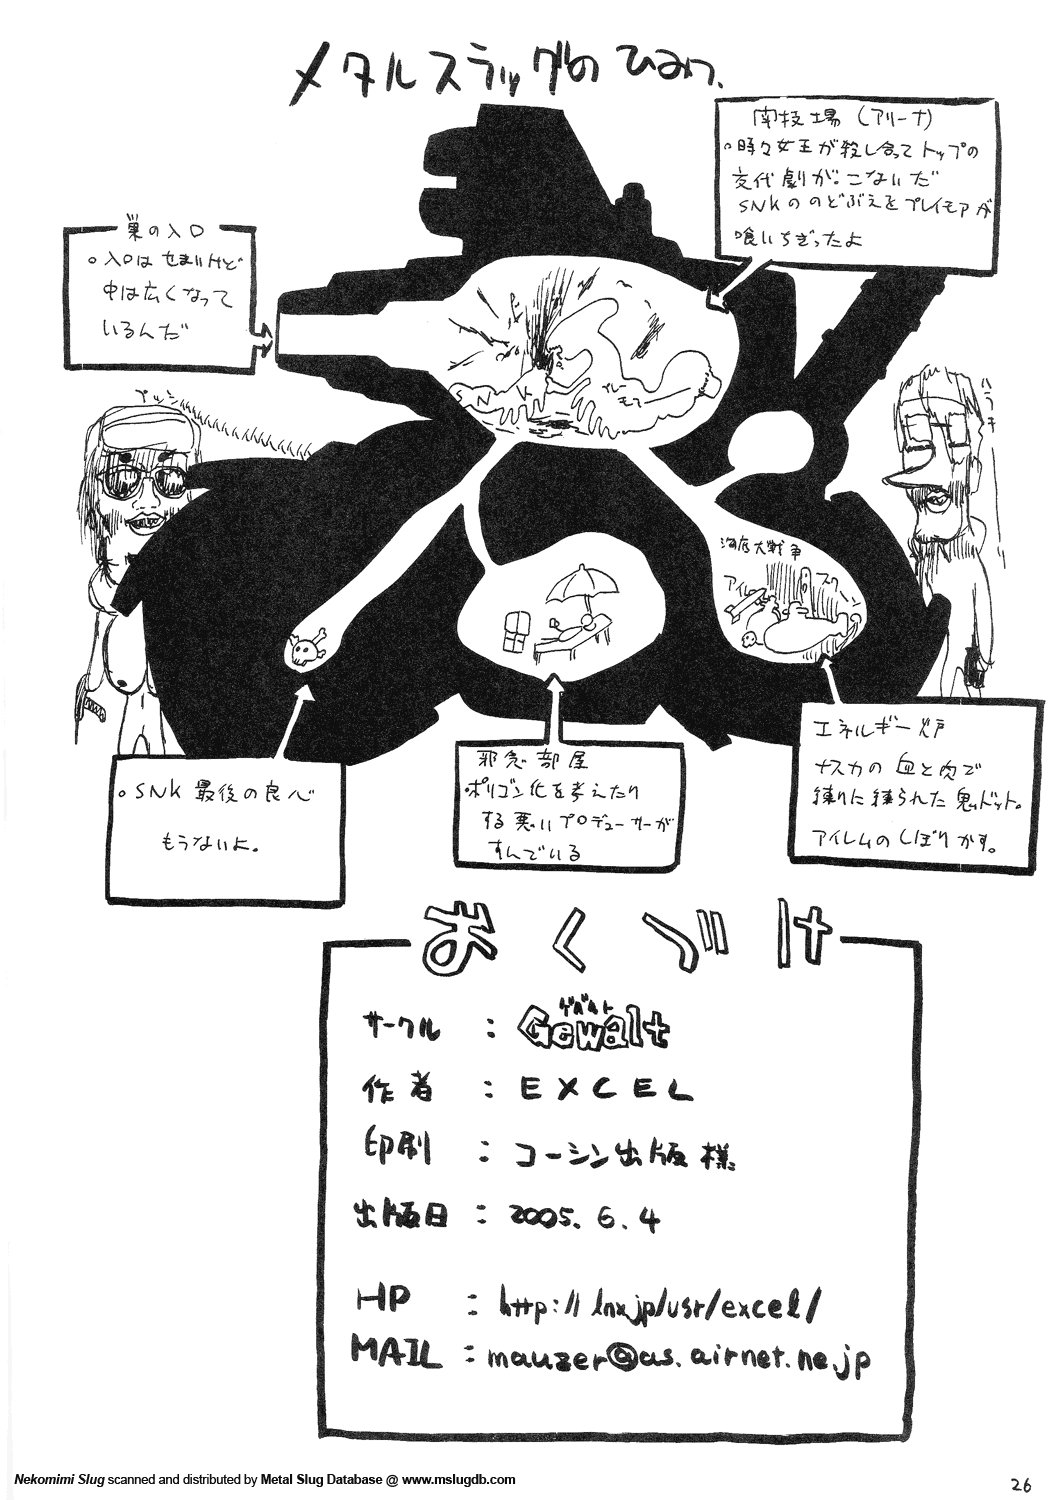 [GEWALT (EXCEL)] Nekomimi Slug (Metal Slug) page 26 full